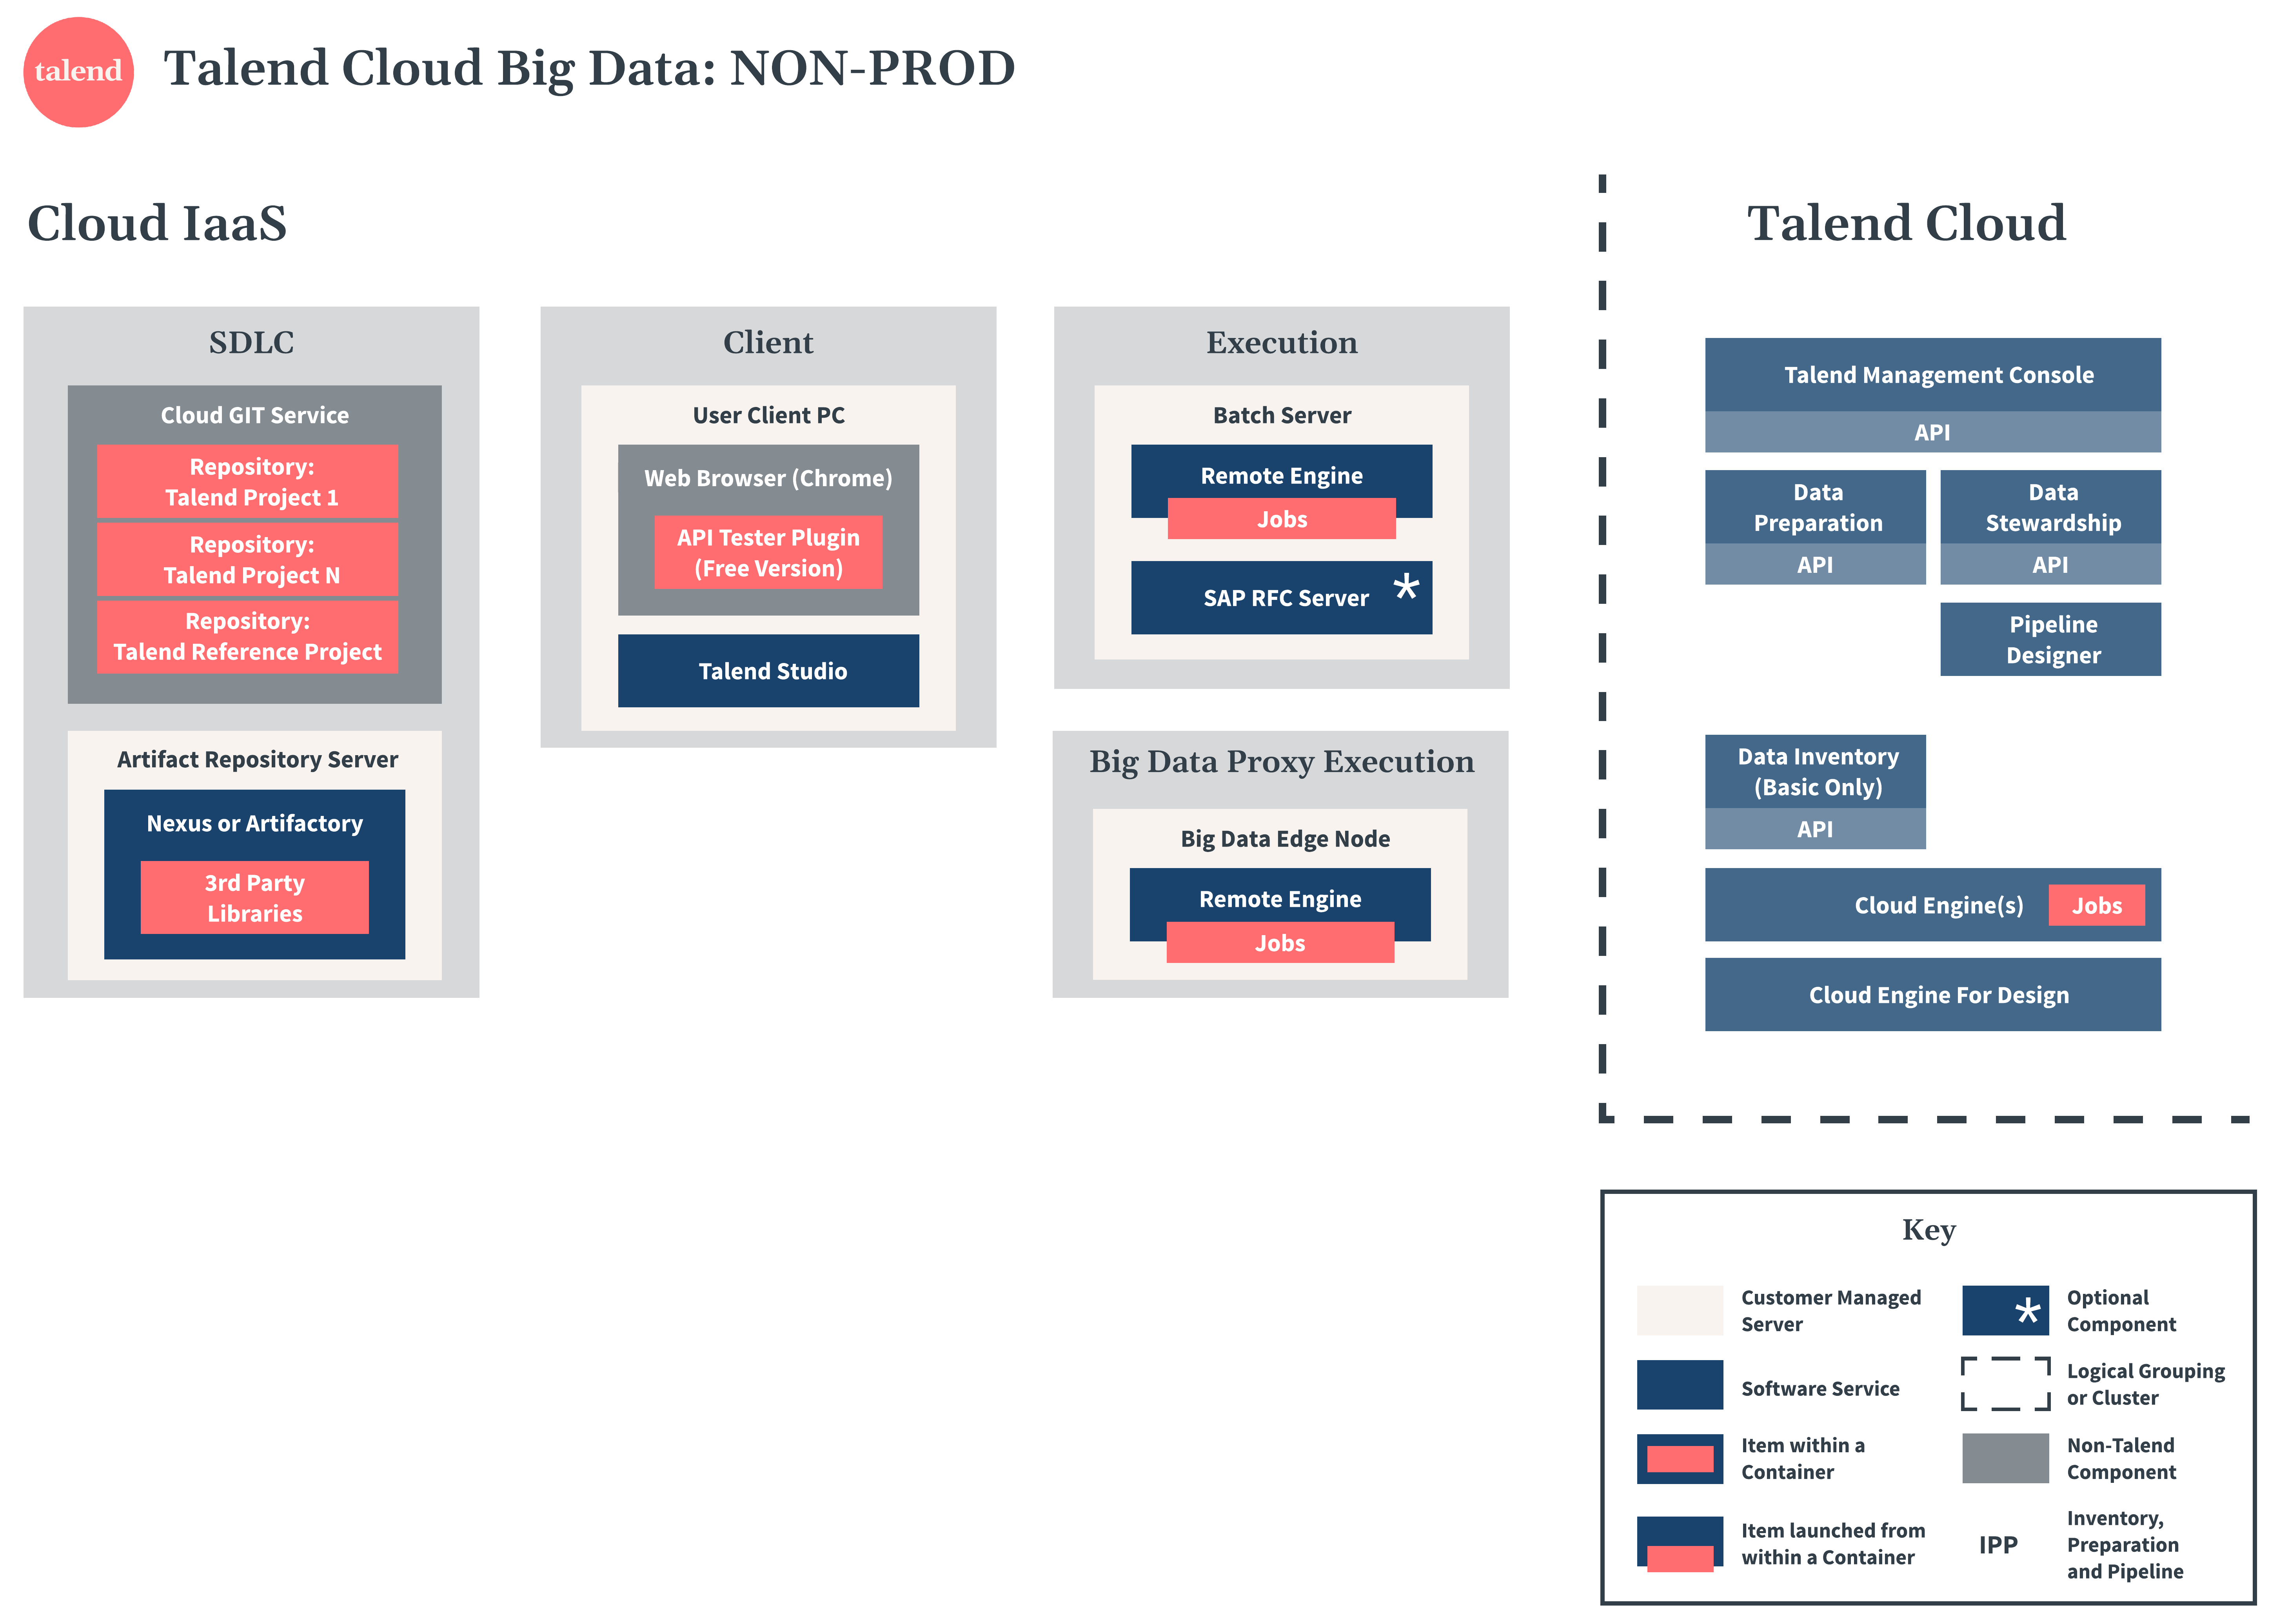 Talend Cloud Big Data Diagramm zu Nicht-Produktion.